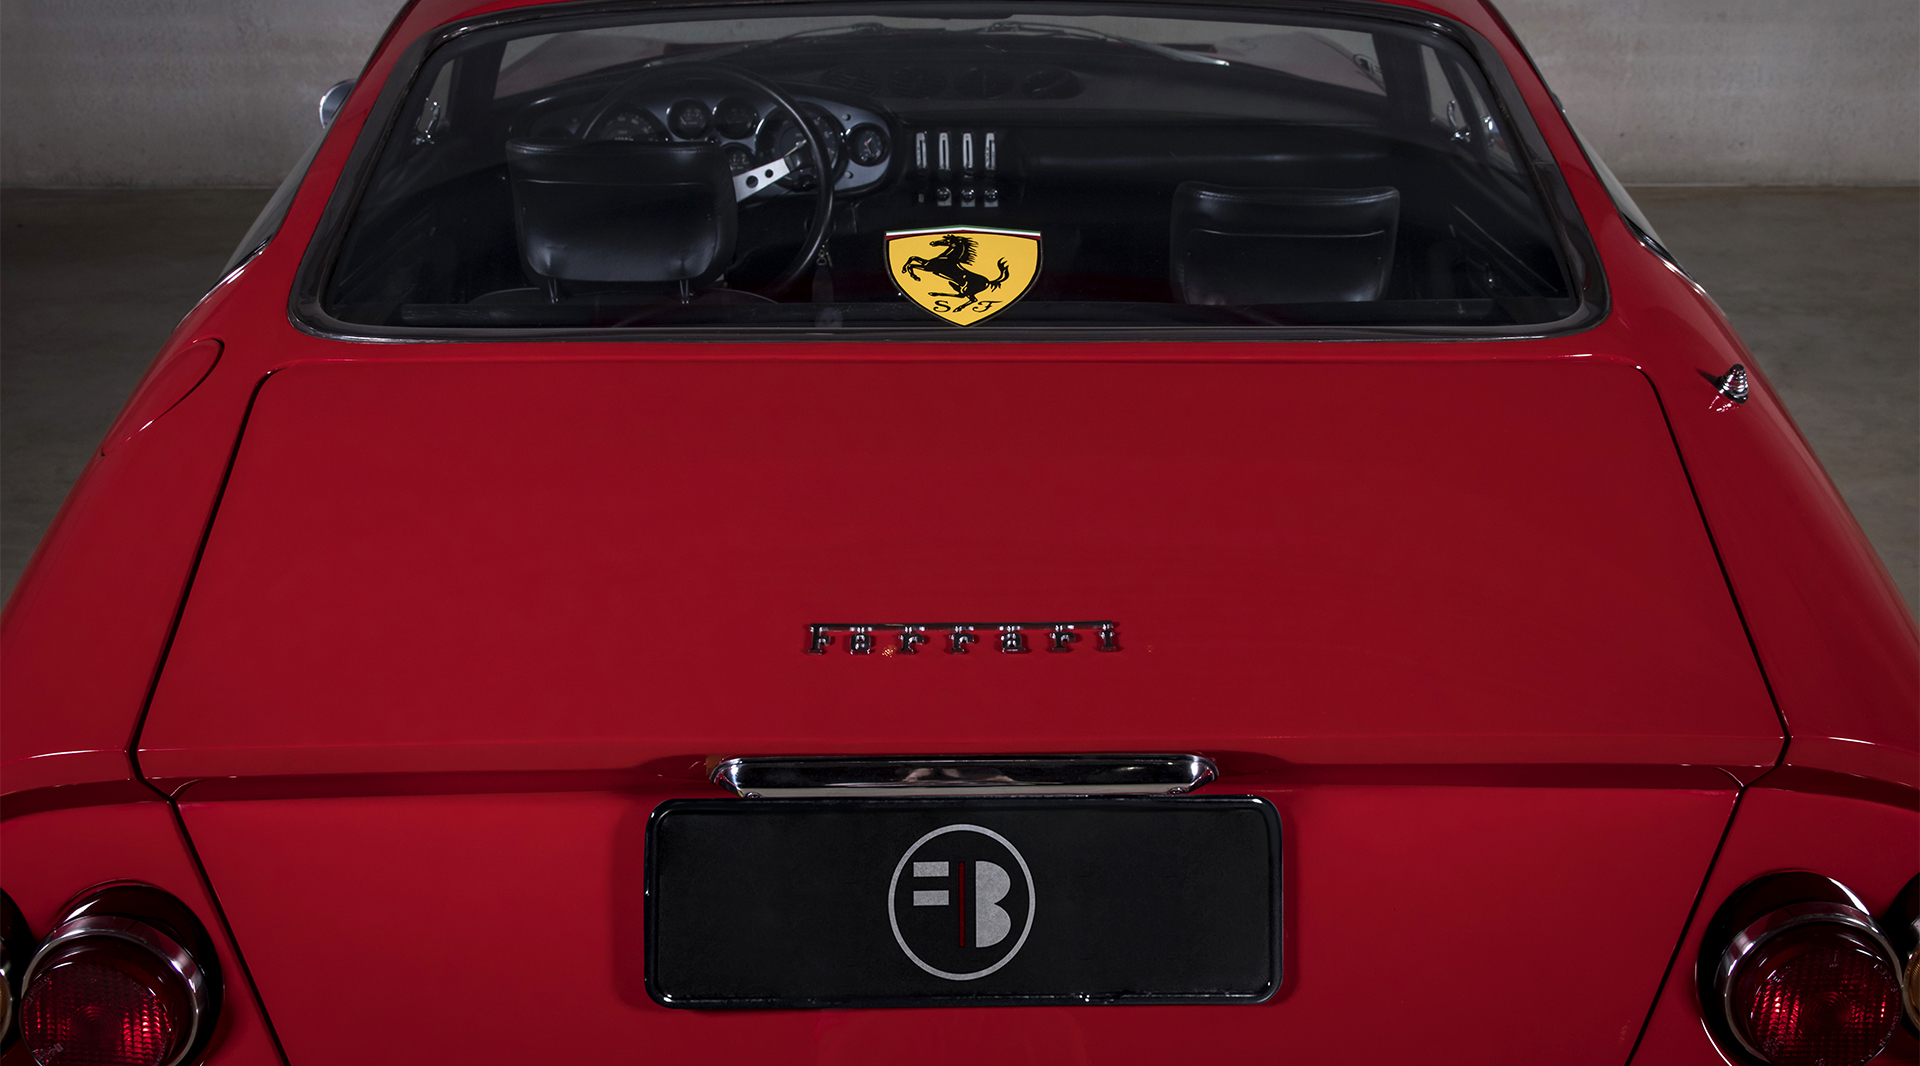 Ferrari 365 Daytona GTB4